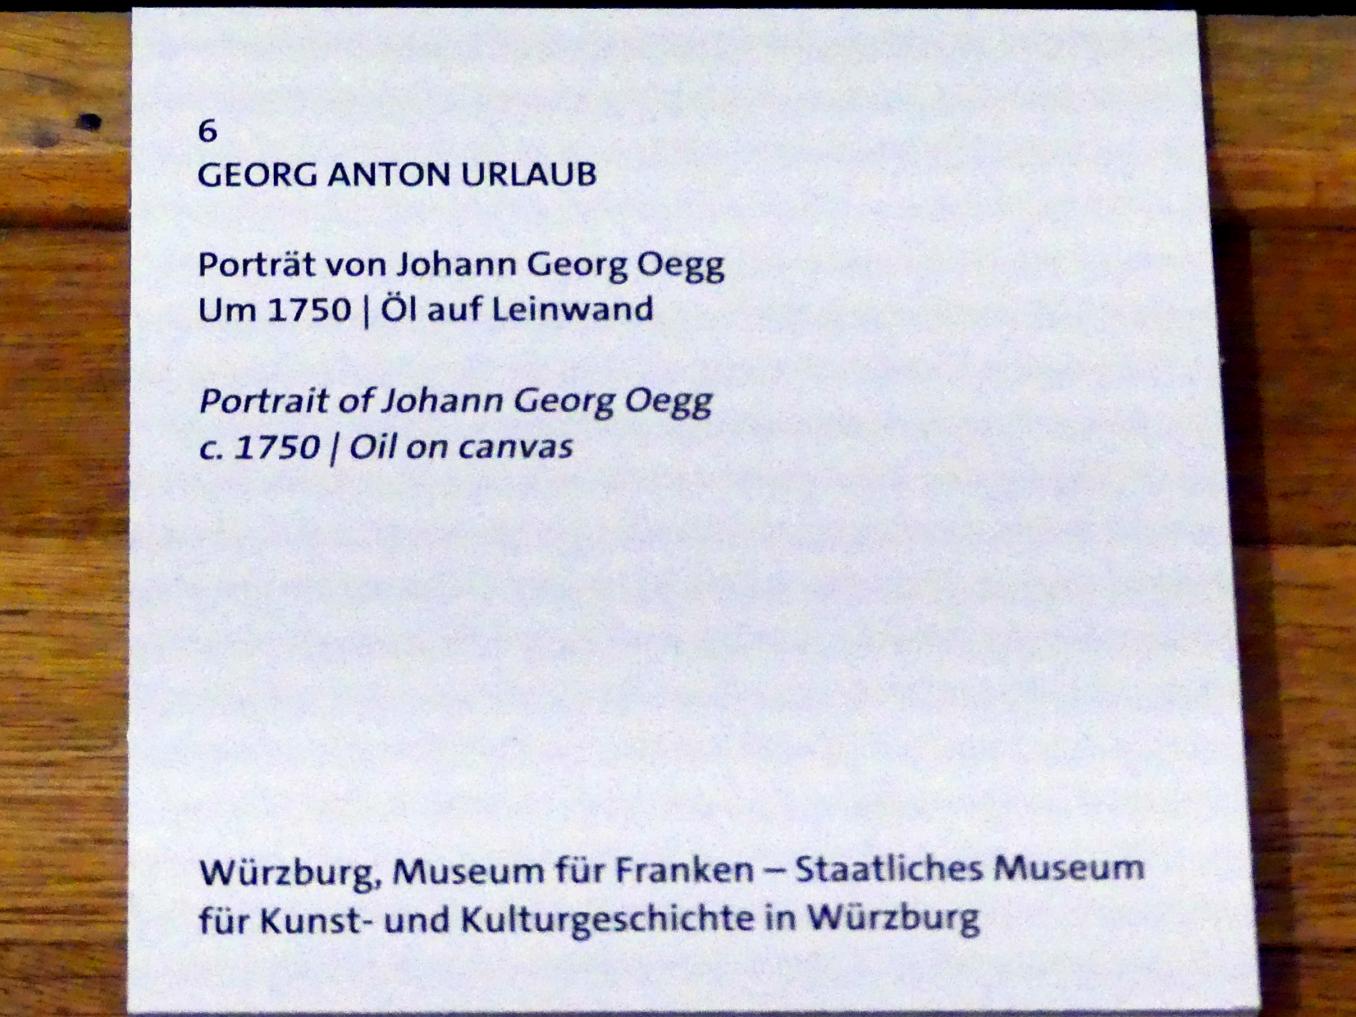 Georg Anton Urlaub (1735–1758), Porträt von Johann Georg Oegg, Würzburg, Martin von Wagner Museum, Ausstellung "Tiepolo und seine Zeit in Würzburg" vom 31.10.2020-15.07.2021, Saal 1, um 1750, Bild 2/2